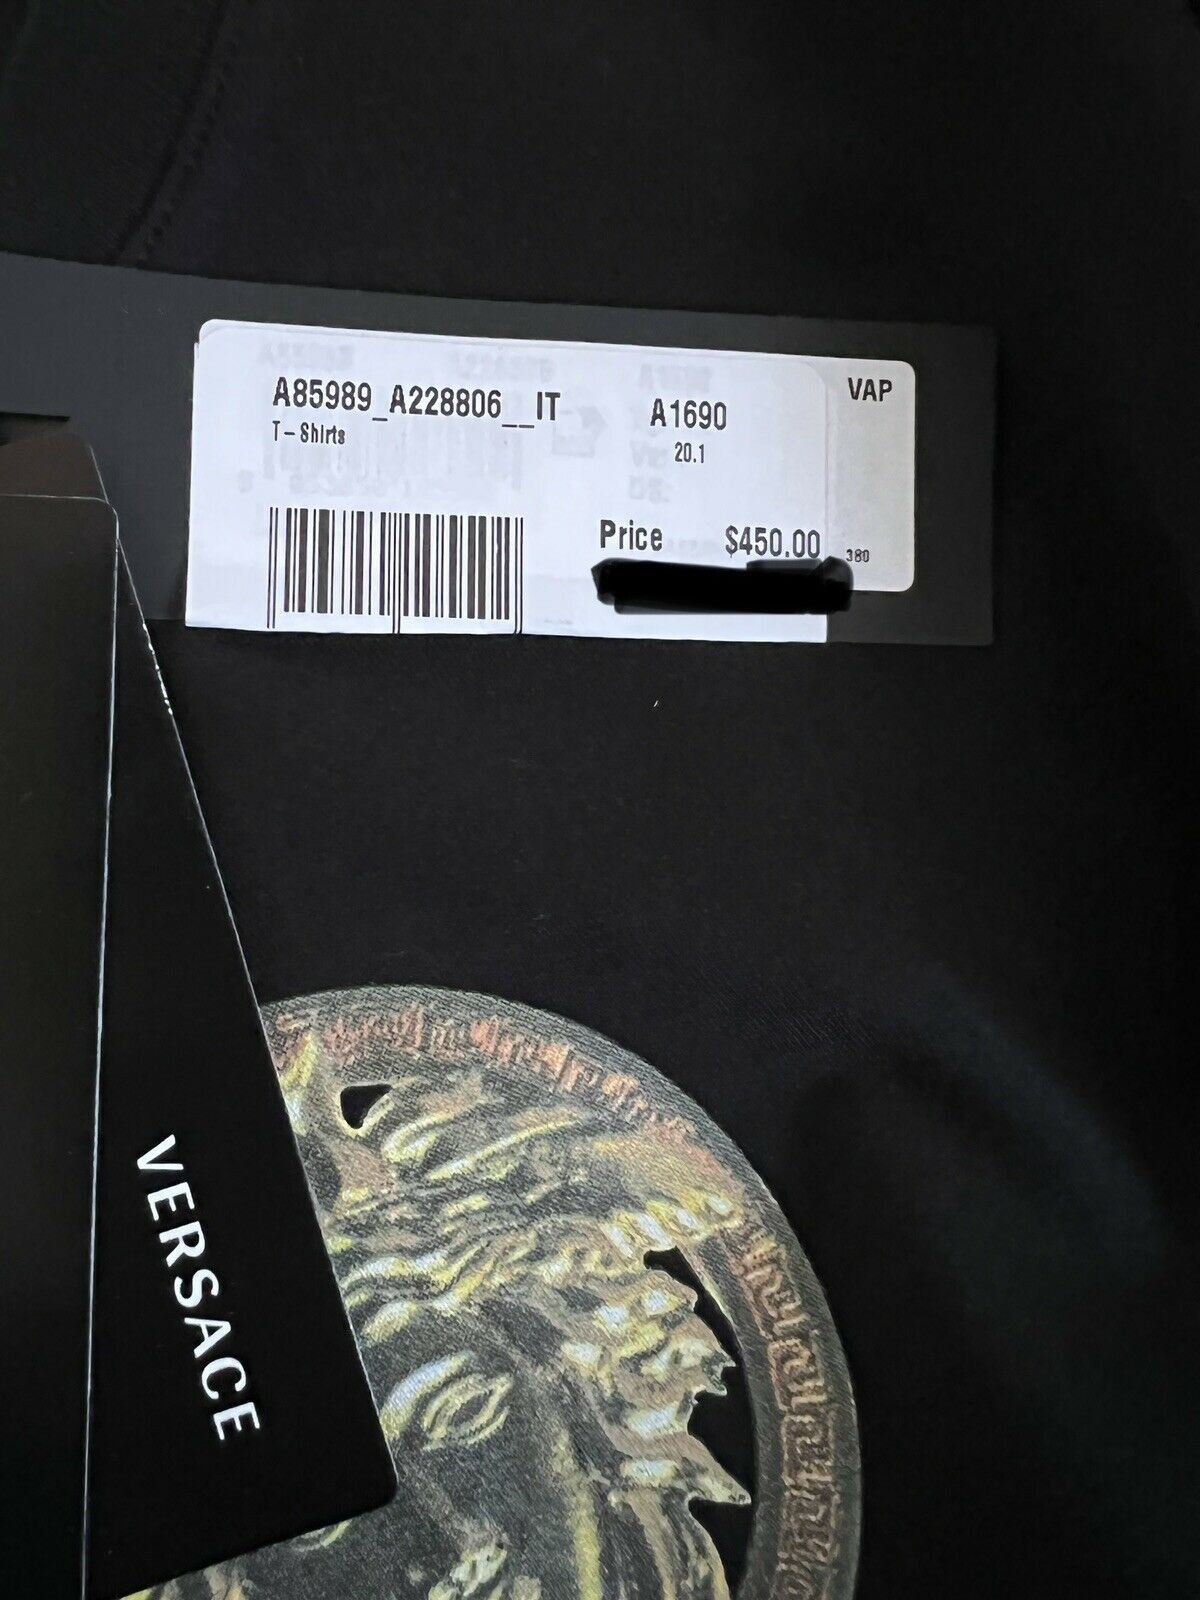 NWT 450 долларов США Versace Medusa Home Signature Футболка с круглым вырезом с принтом 2XL Италия 85989